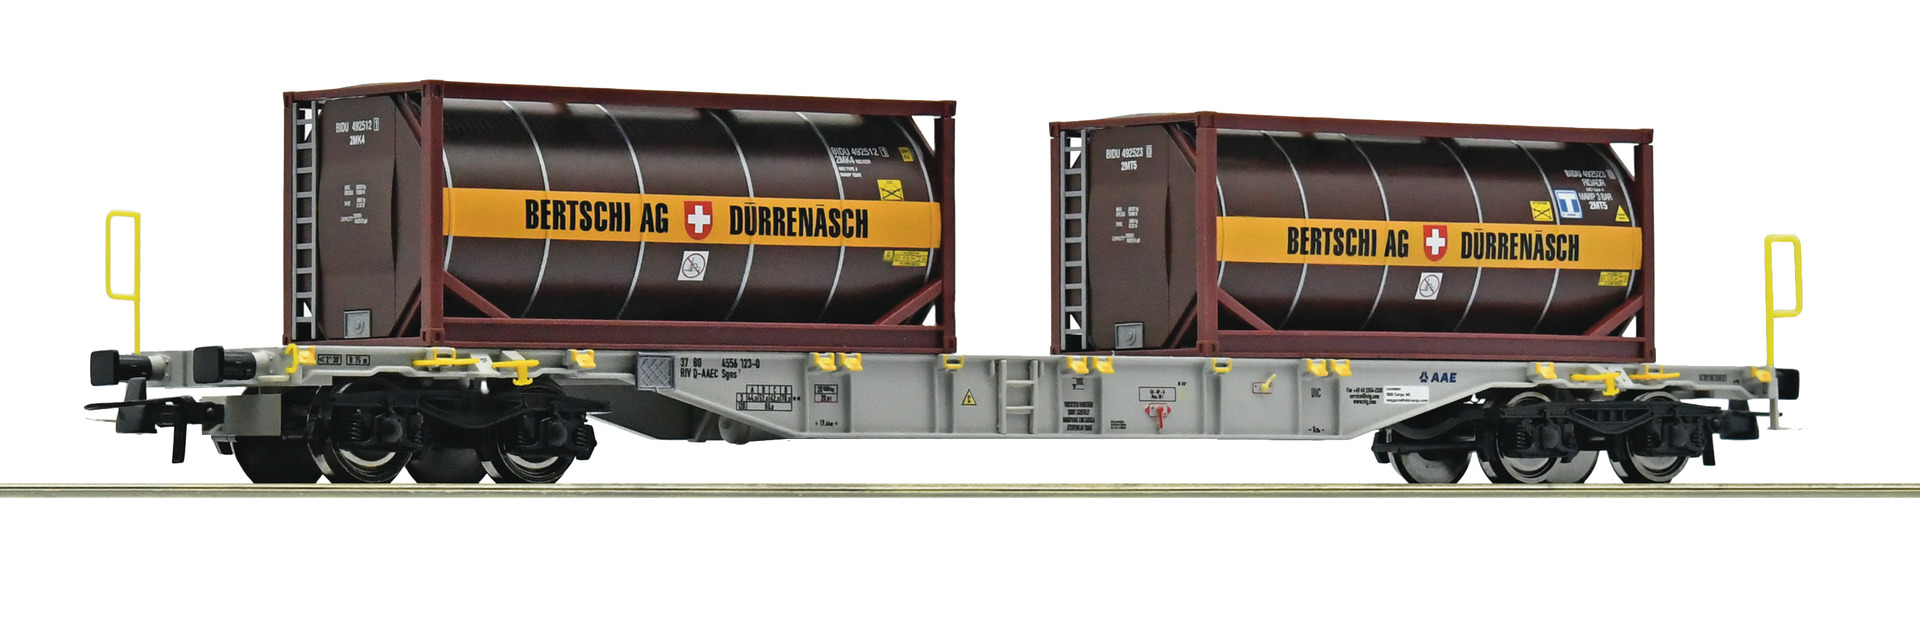 Roco 77346, AAE/SBB Containertragwagen Sgnss (2x Tankcontainern Bertschi, braun)